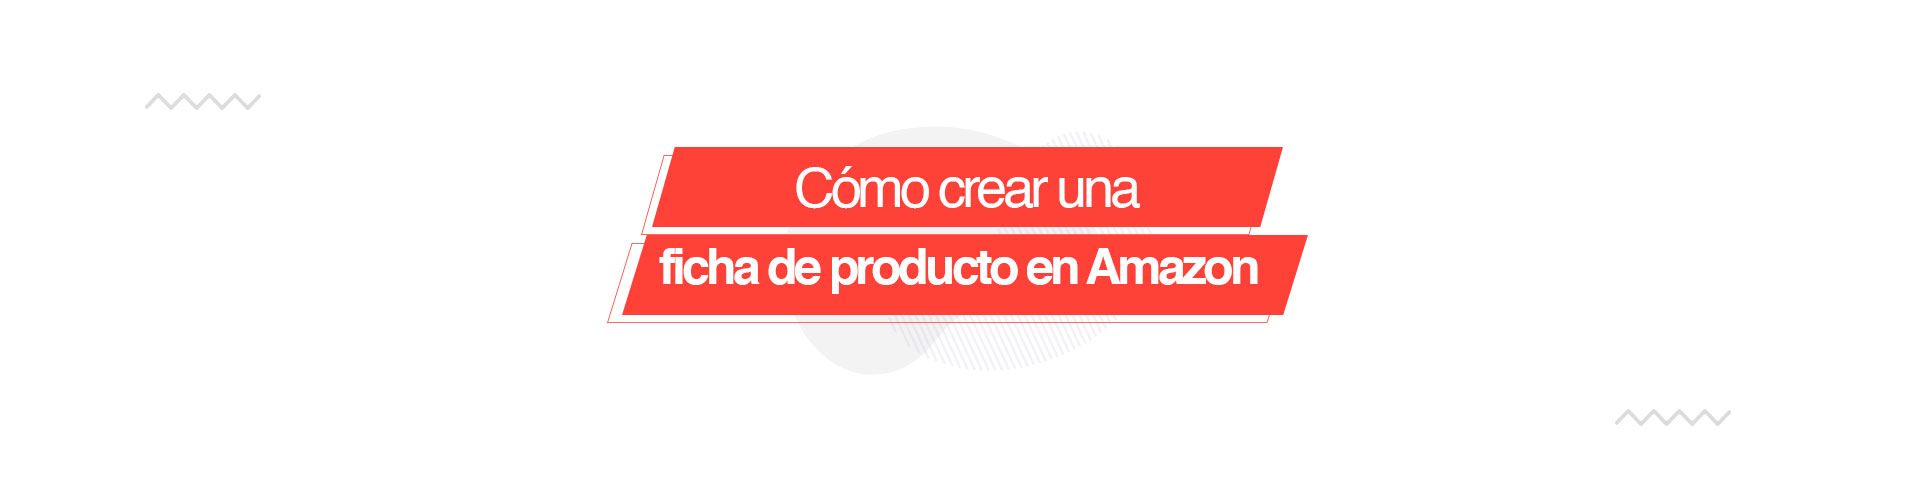 Cómo crear una ficha de producto en Amazon